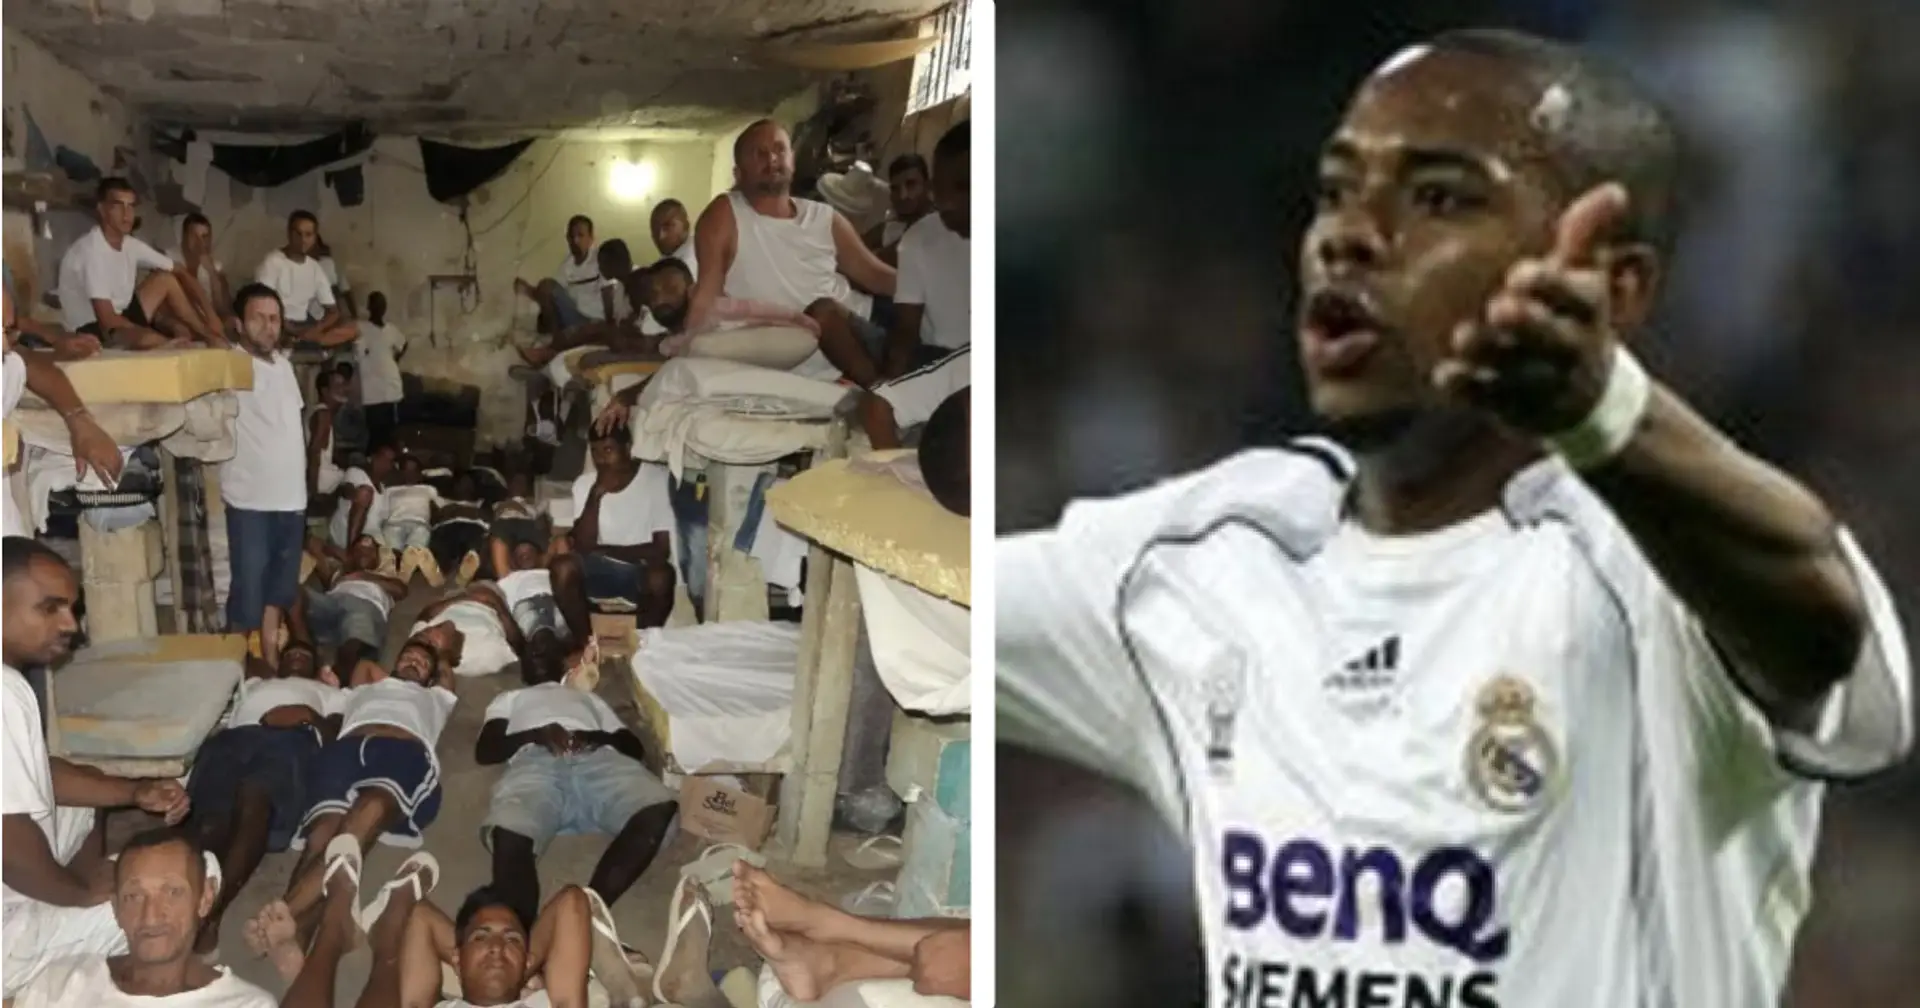 Cellule de 8 mètres remplie d'assassins, premier match de football : les conditions de vie de Robinho en prison révélées